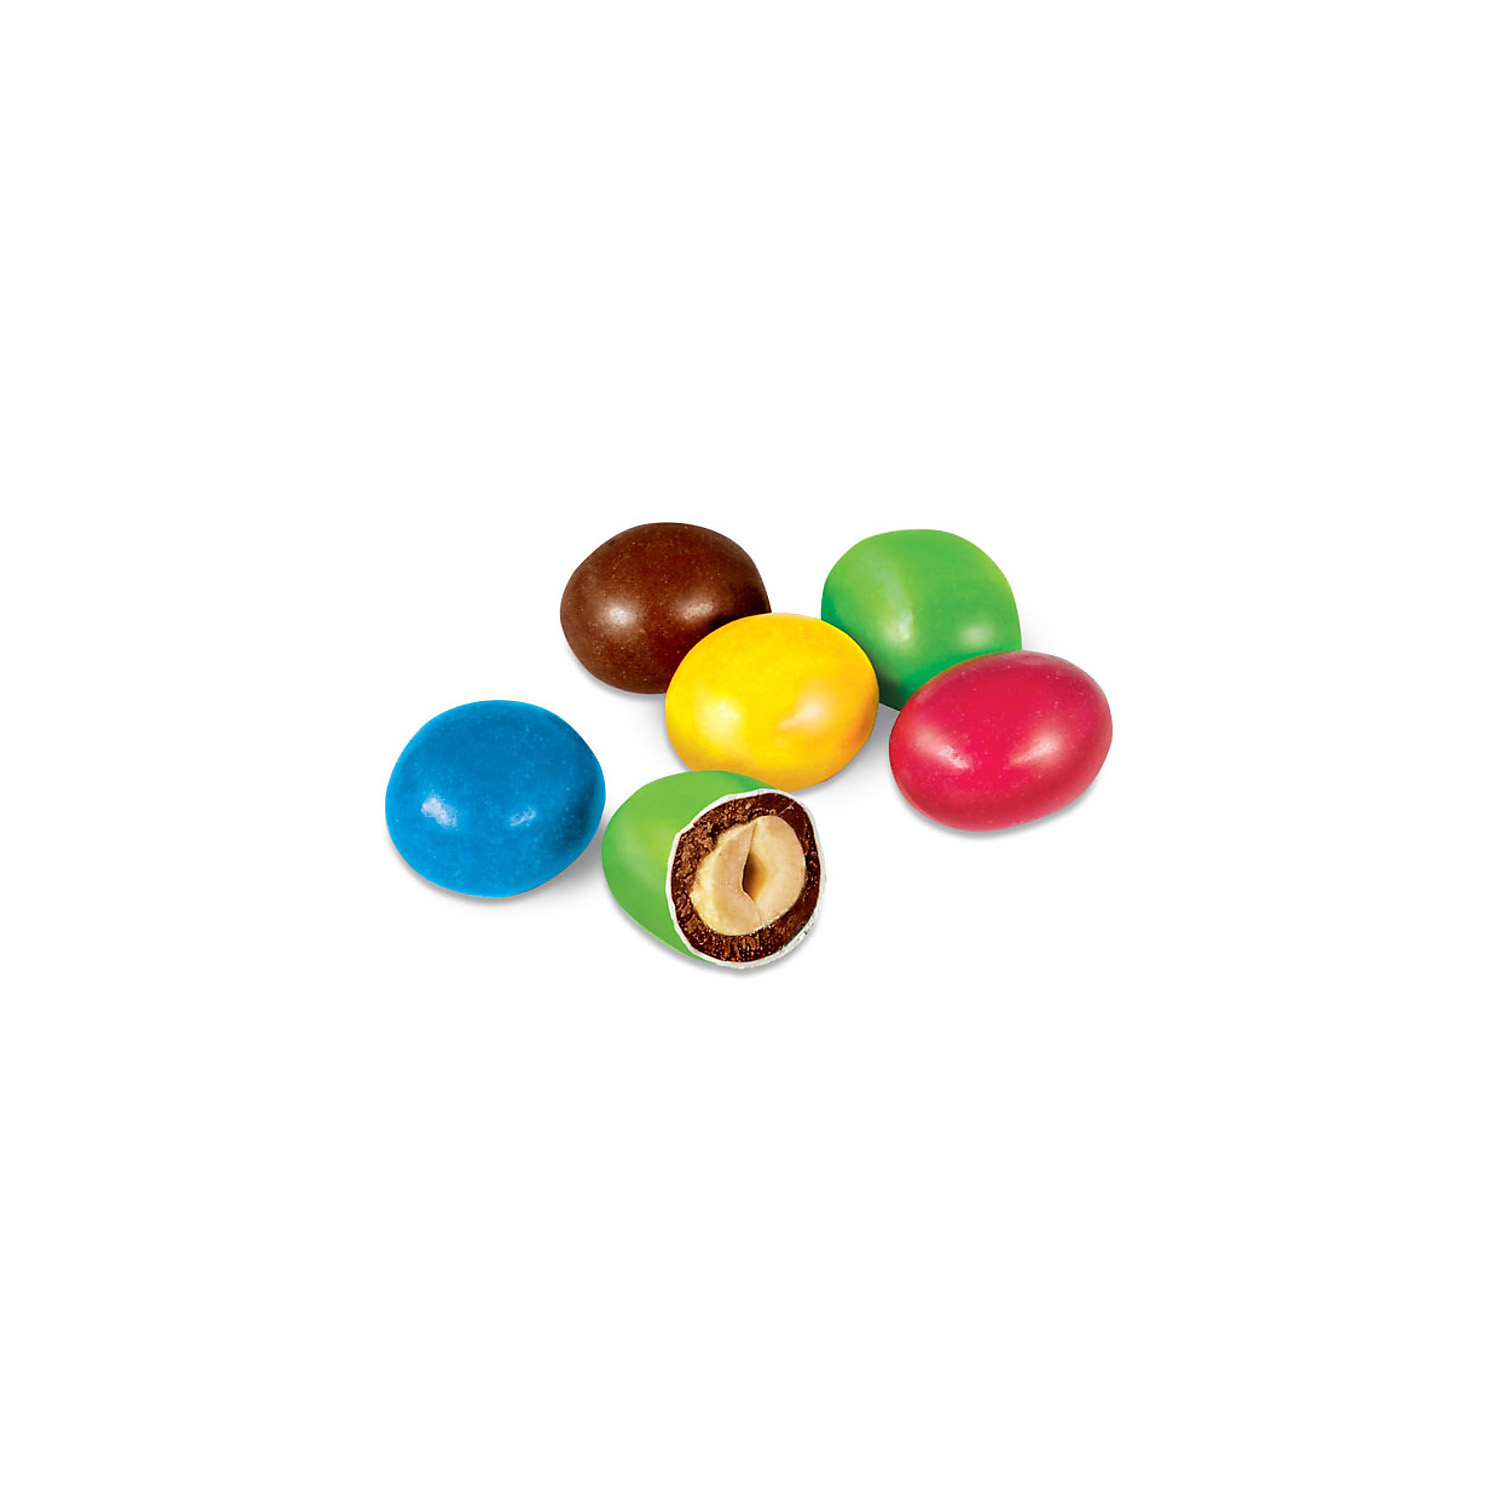 Драже KDV арахис в шоколадной и сахарной цветной глазури 2 упаковки по 500 грамм - фото 1